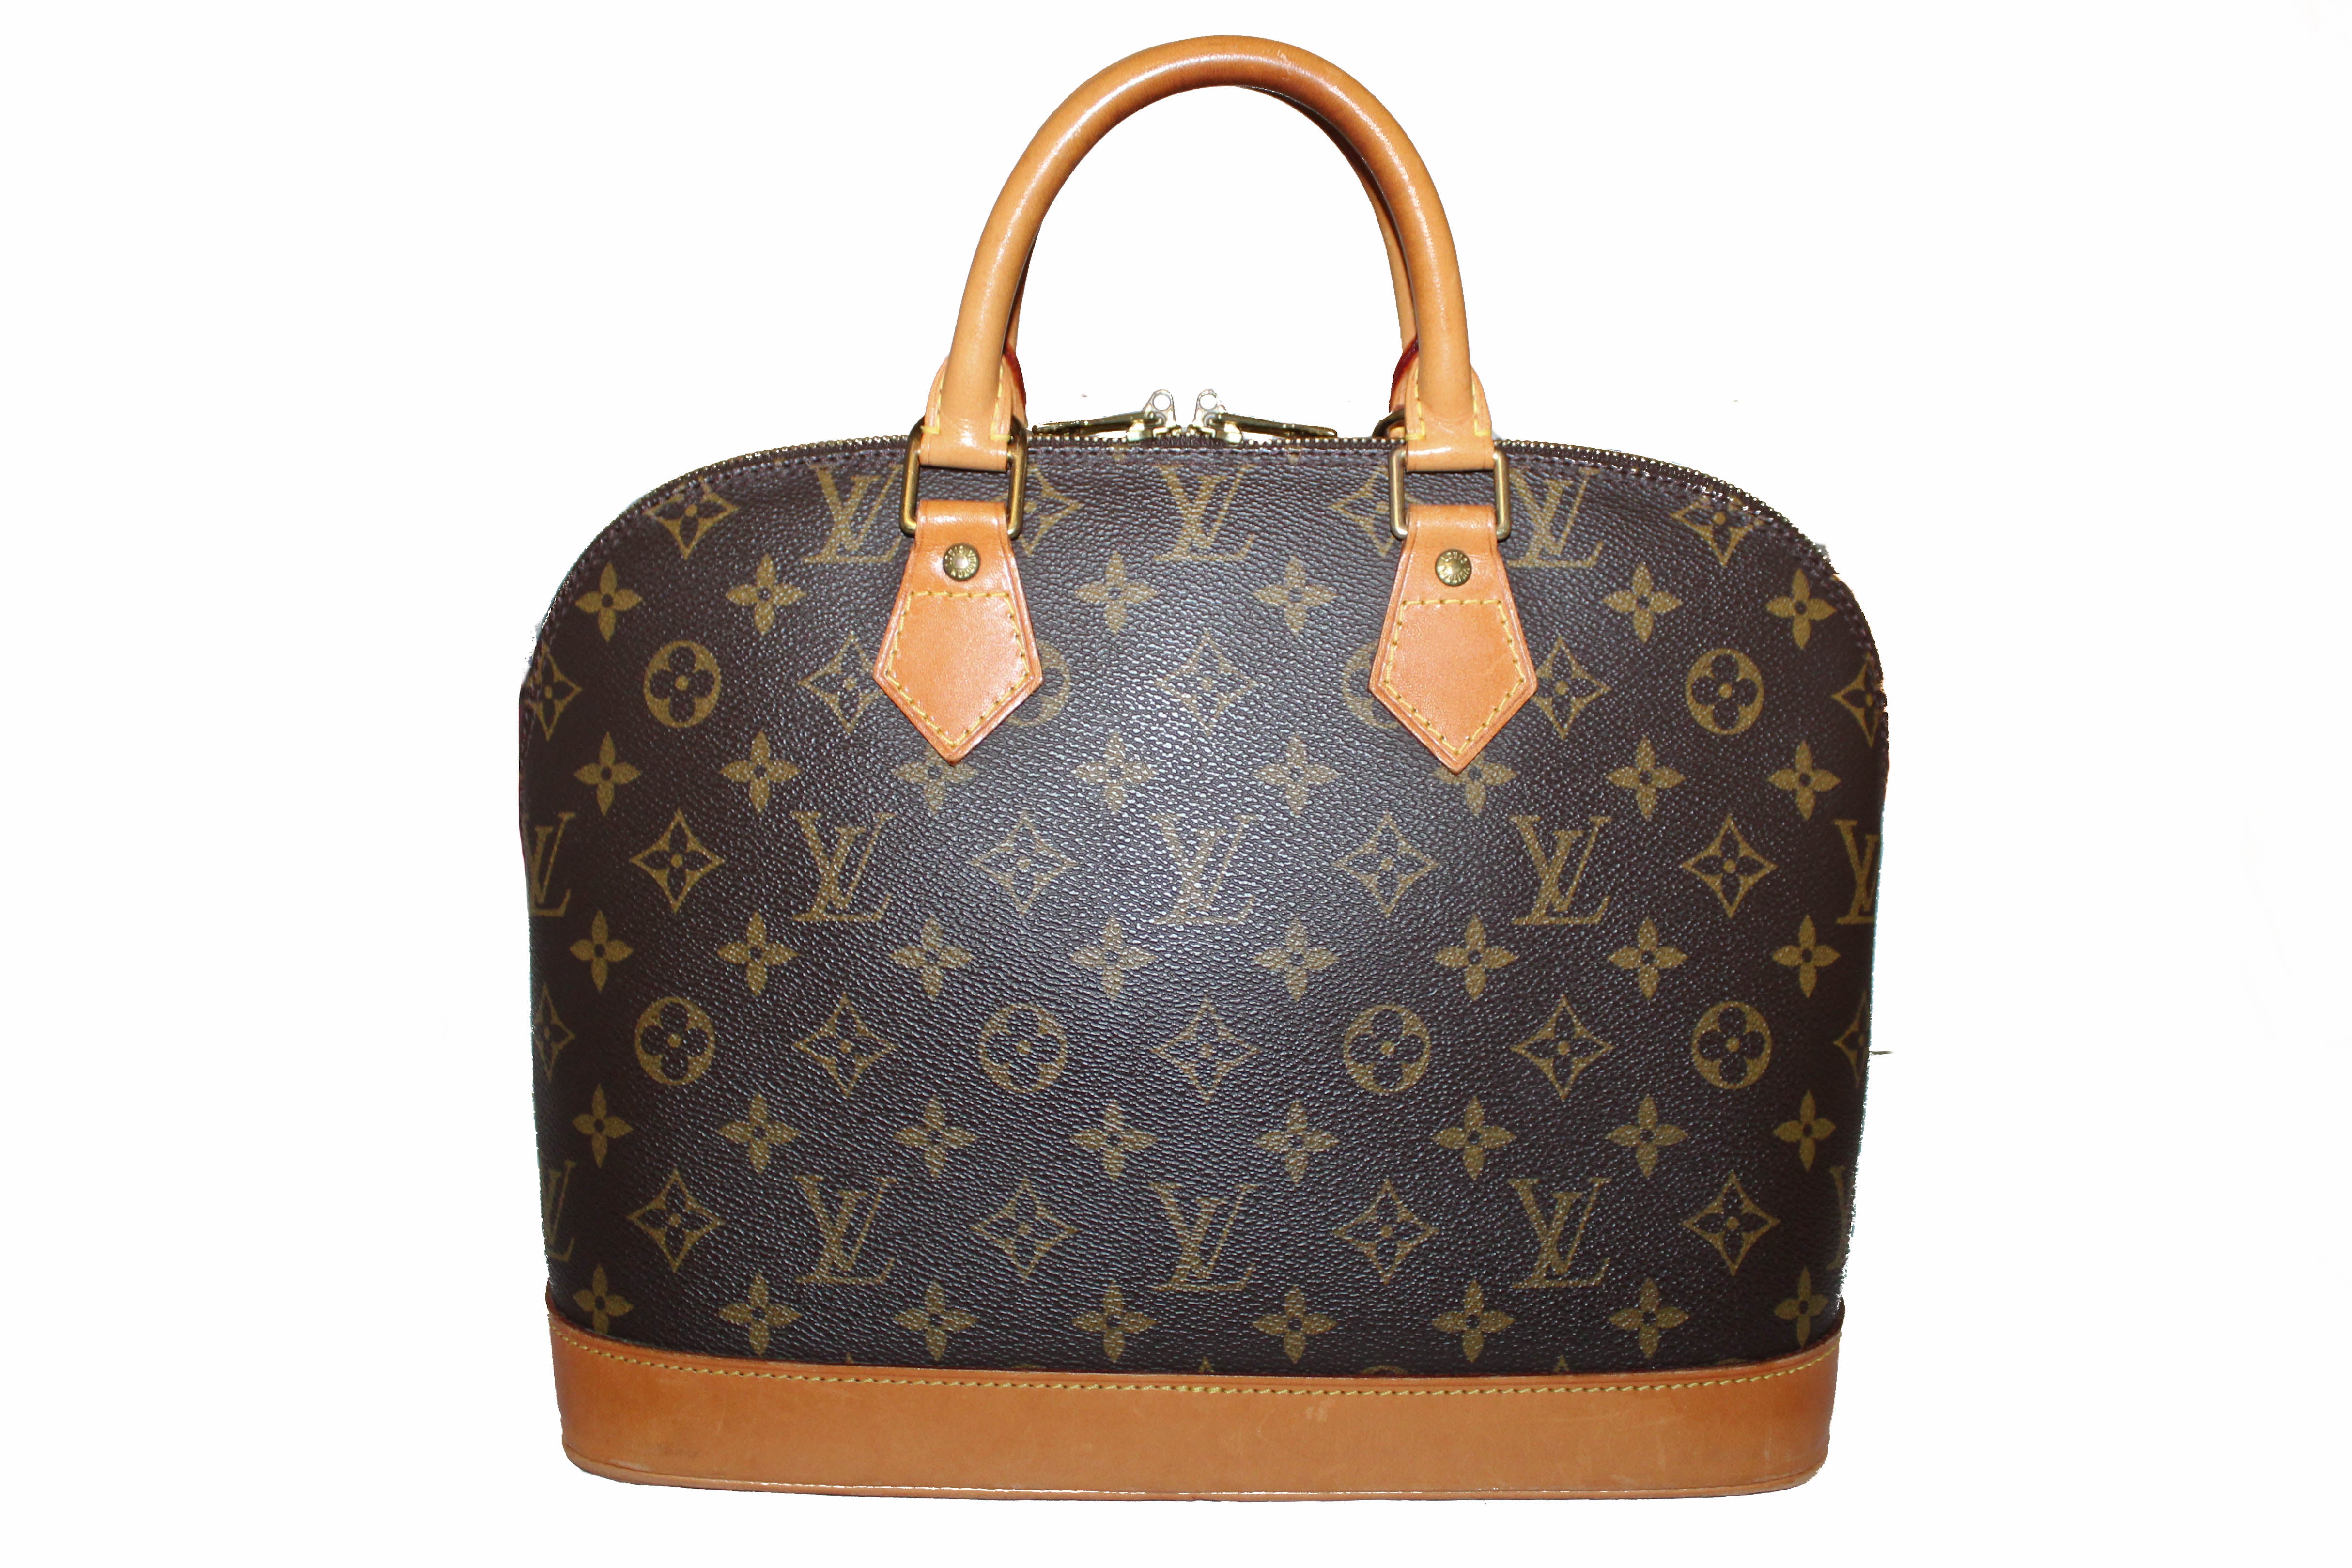 Authentic Louis Vuitton Classic Monogram Alma PM Handbag – Paris Station Shop